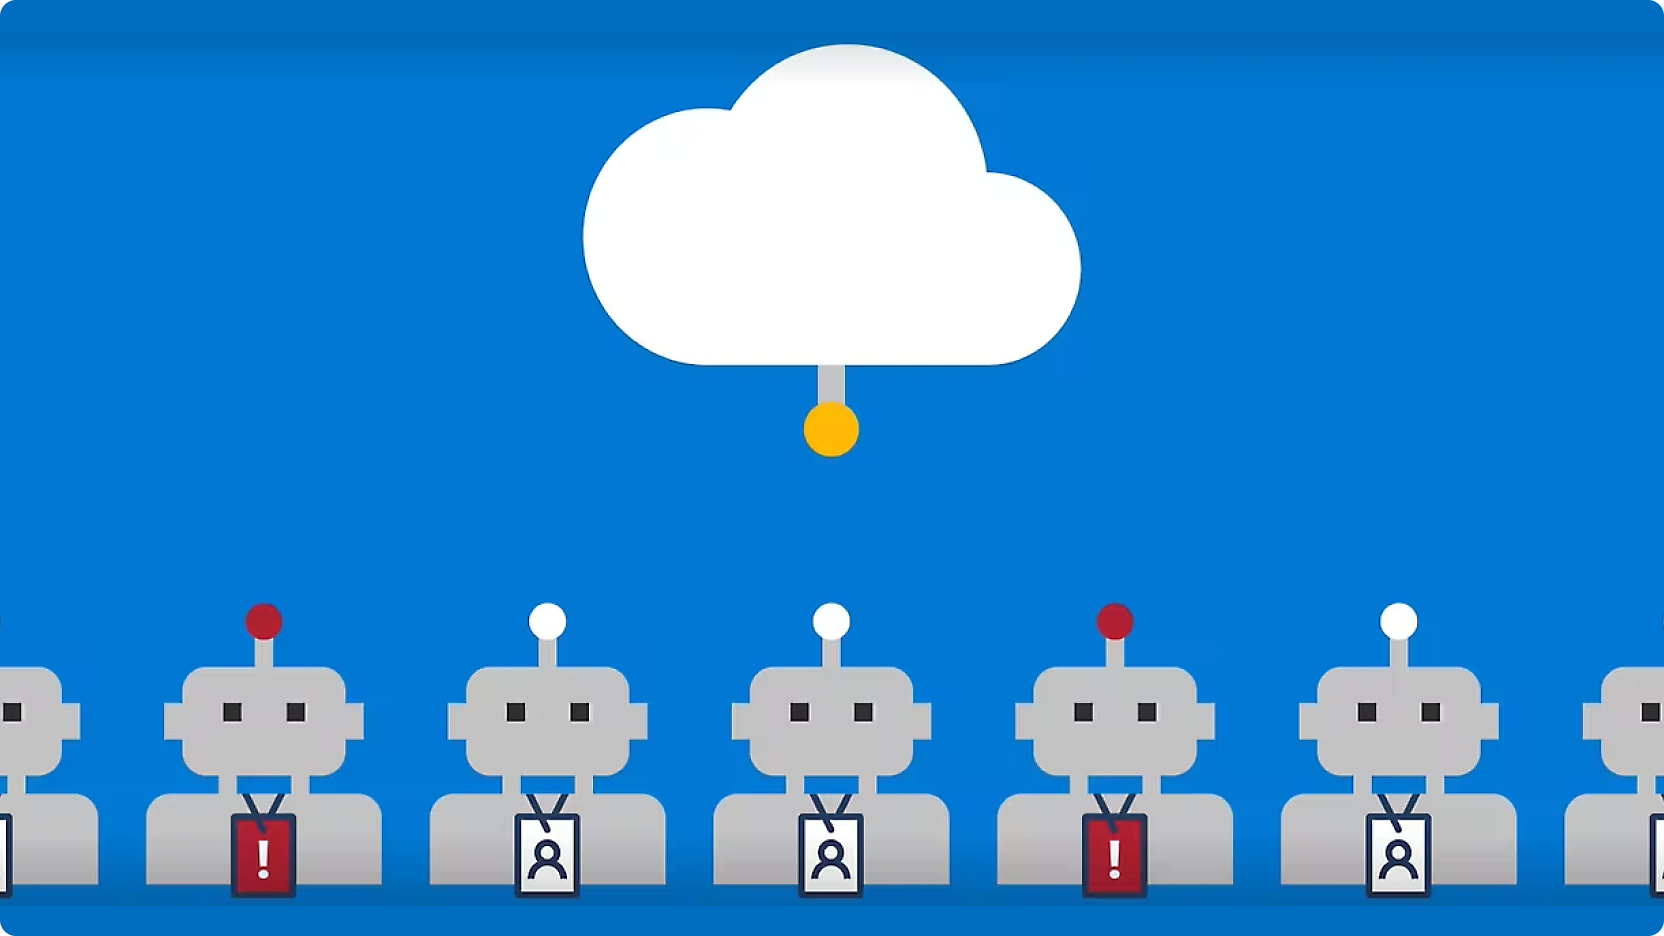 גרפיקה המתארת שורות של רובוטים שעל ראשיהם כפתור אדום, מחוברים בקווים לענן מרכזי